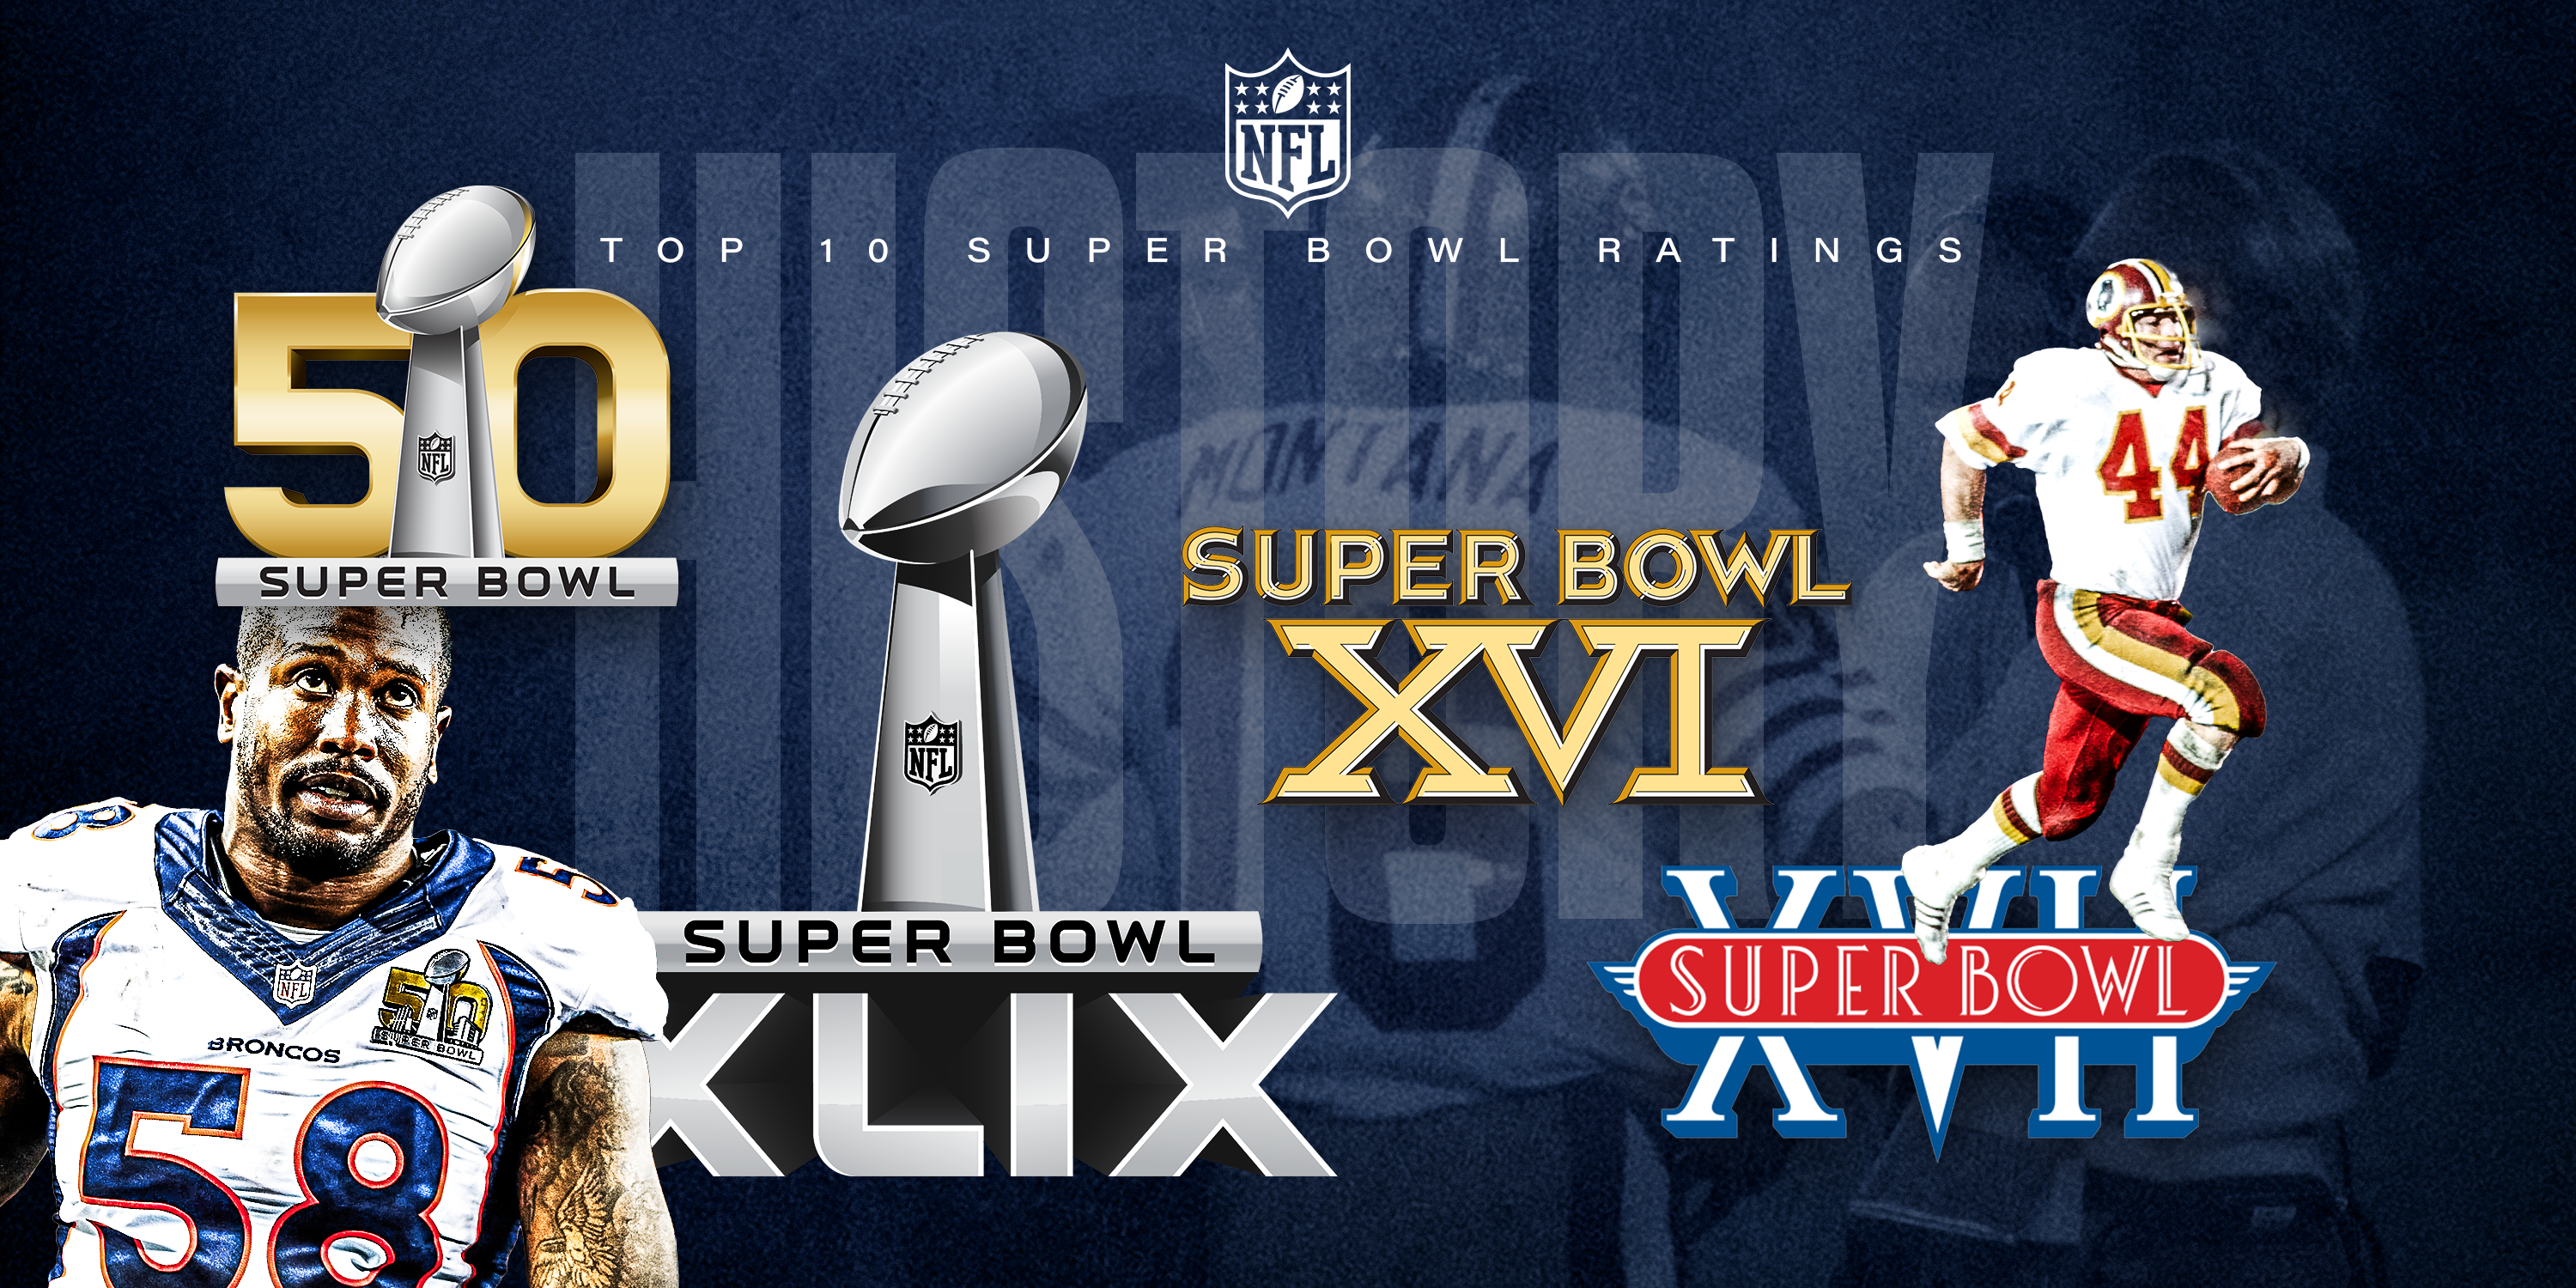 Super Bowl ratings